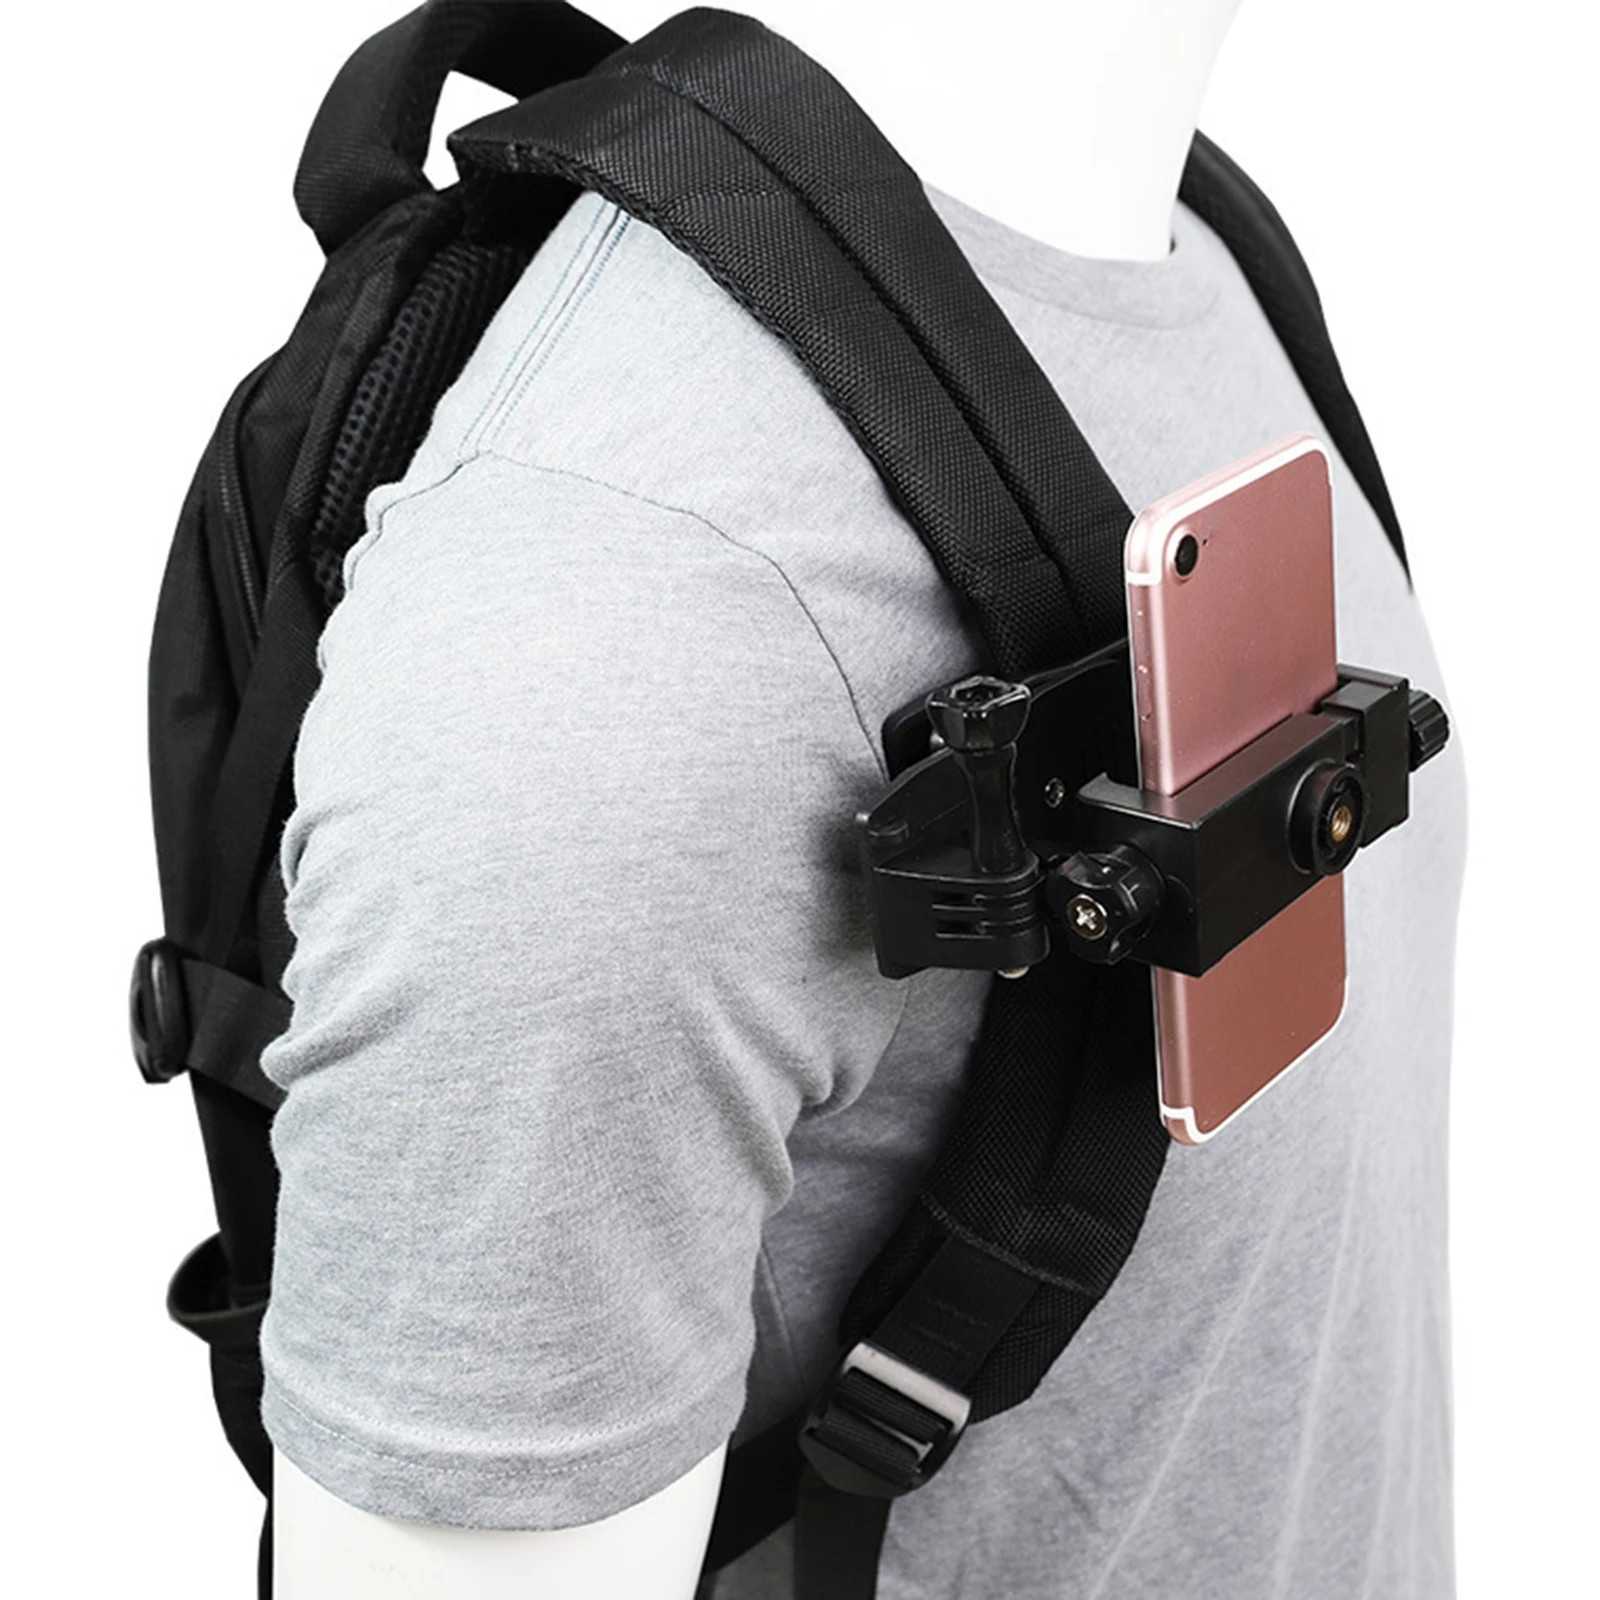 Universal Backpack Shoulder Strap Mount for Mobile Phones Max 7` for Walking